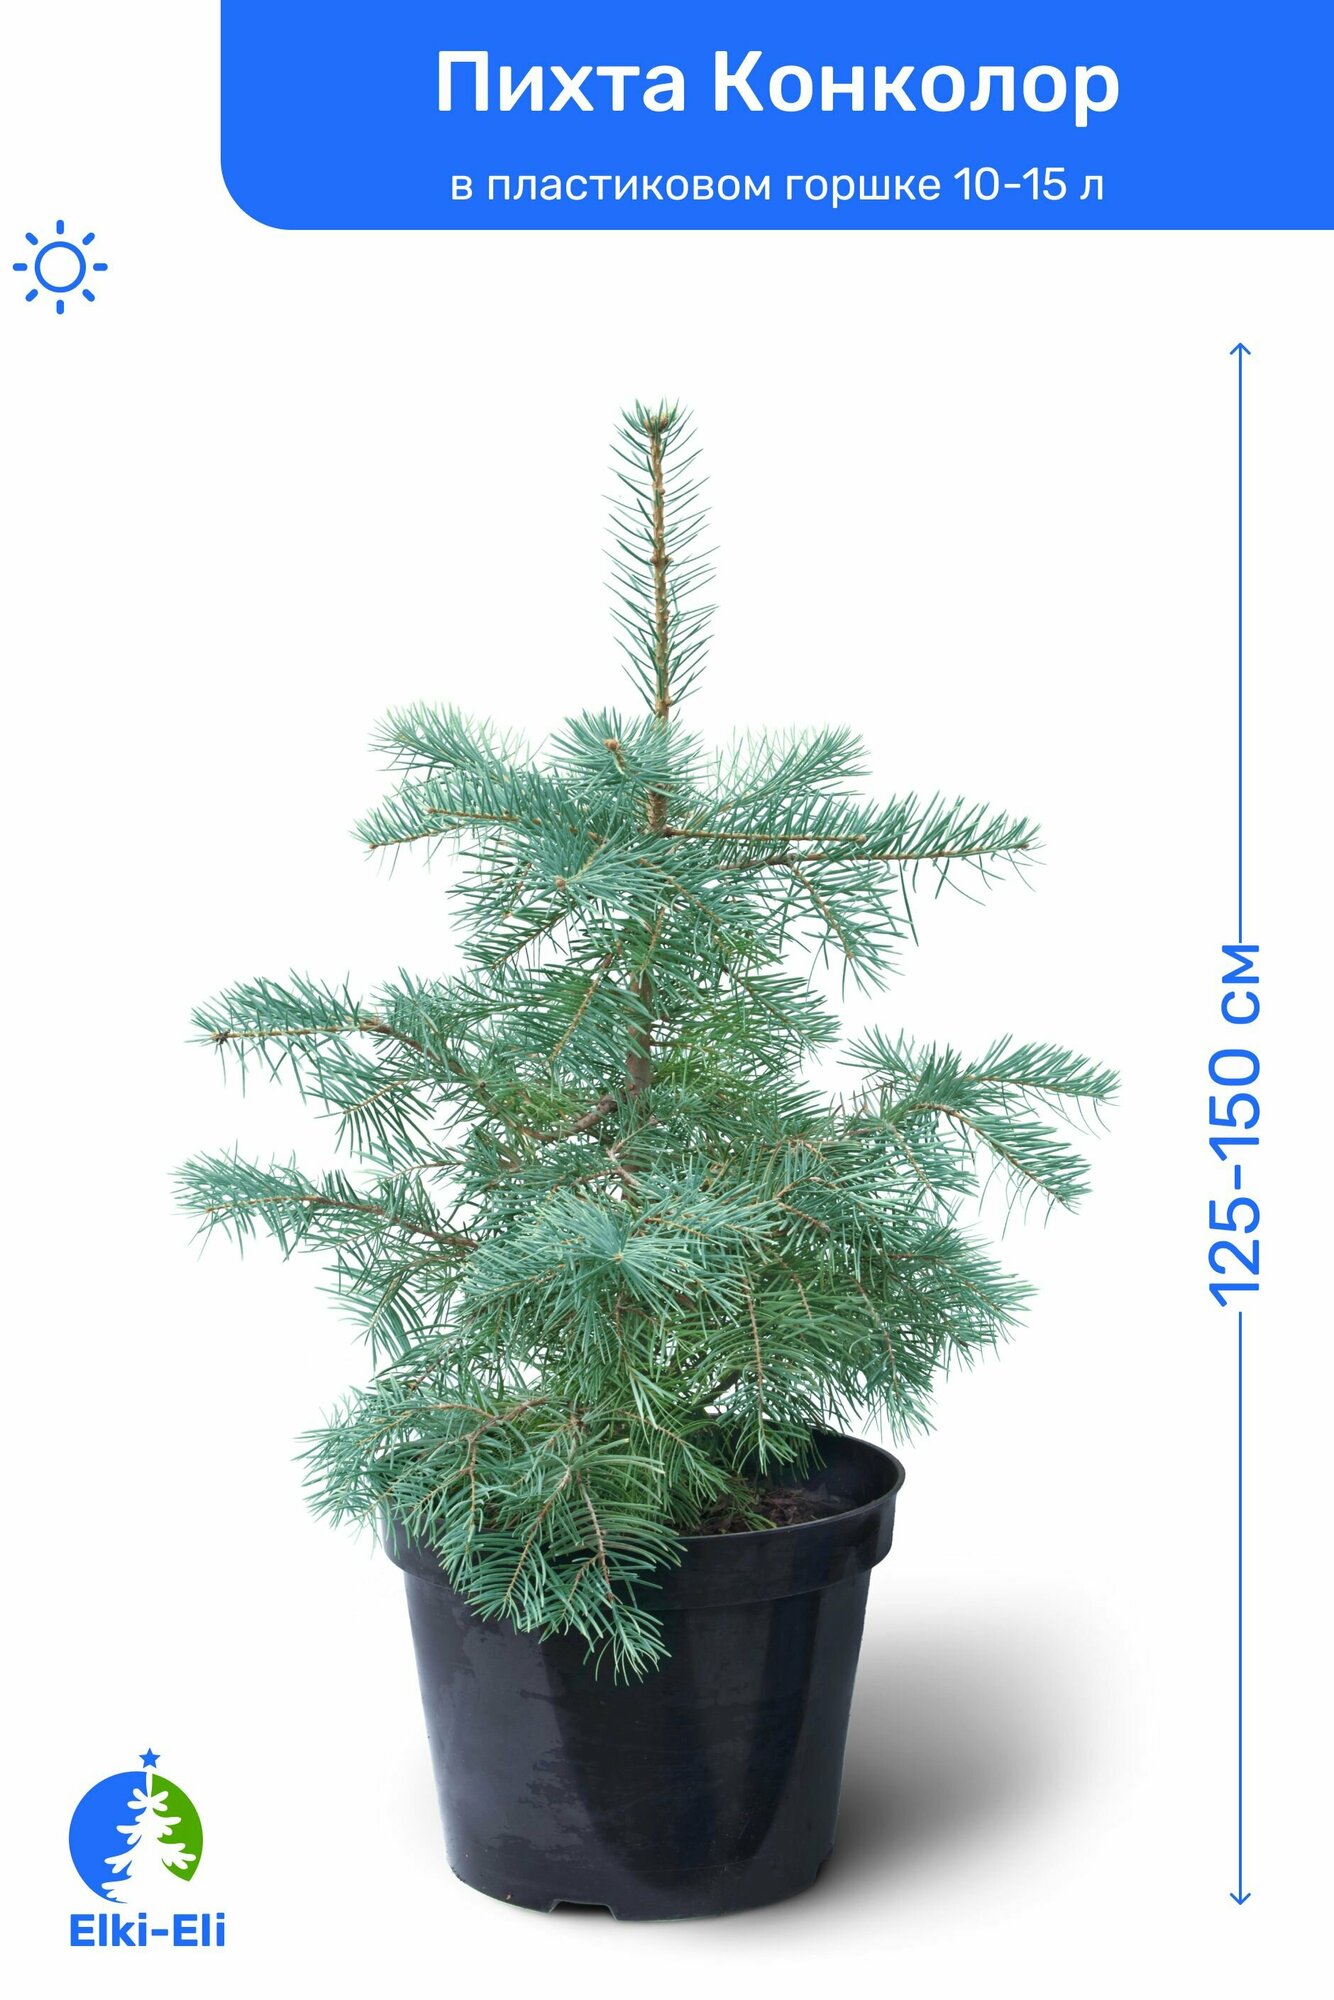 Пихта Конколор (Одноцветная) 125-150 см в пластиковом горшке 20-30 л, саженец, хвойное живое растение